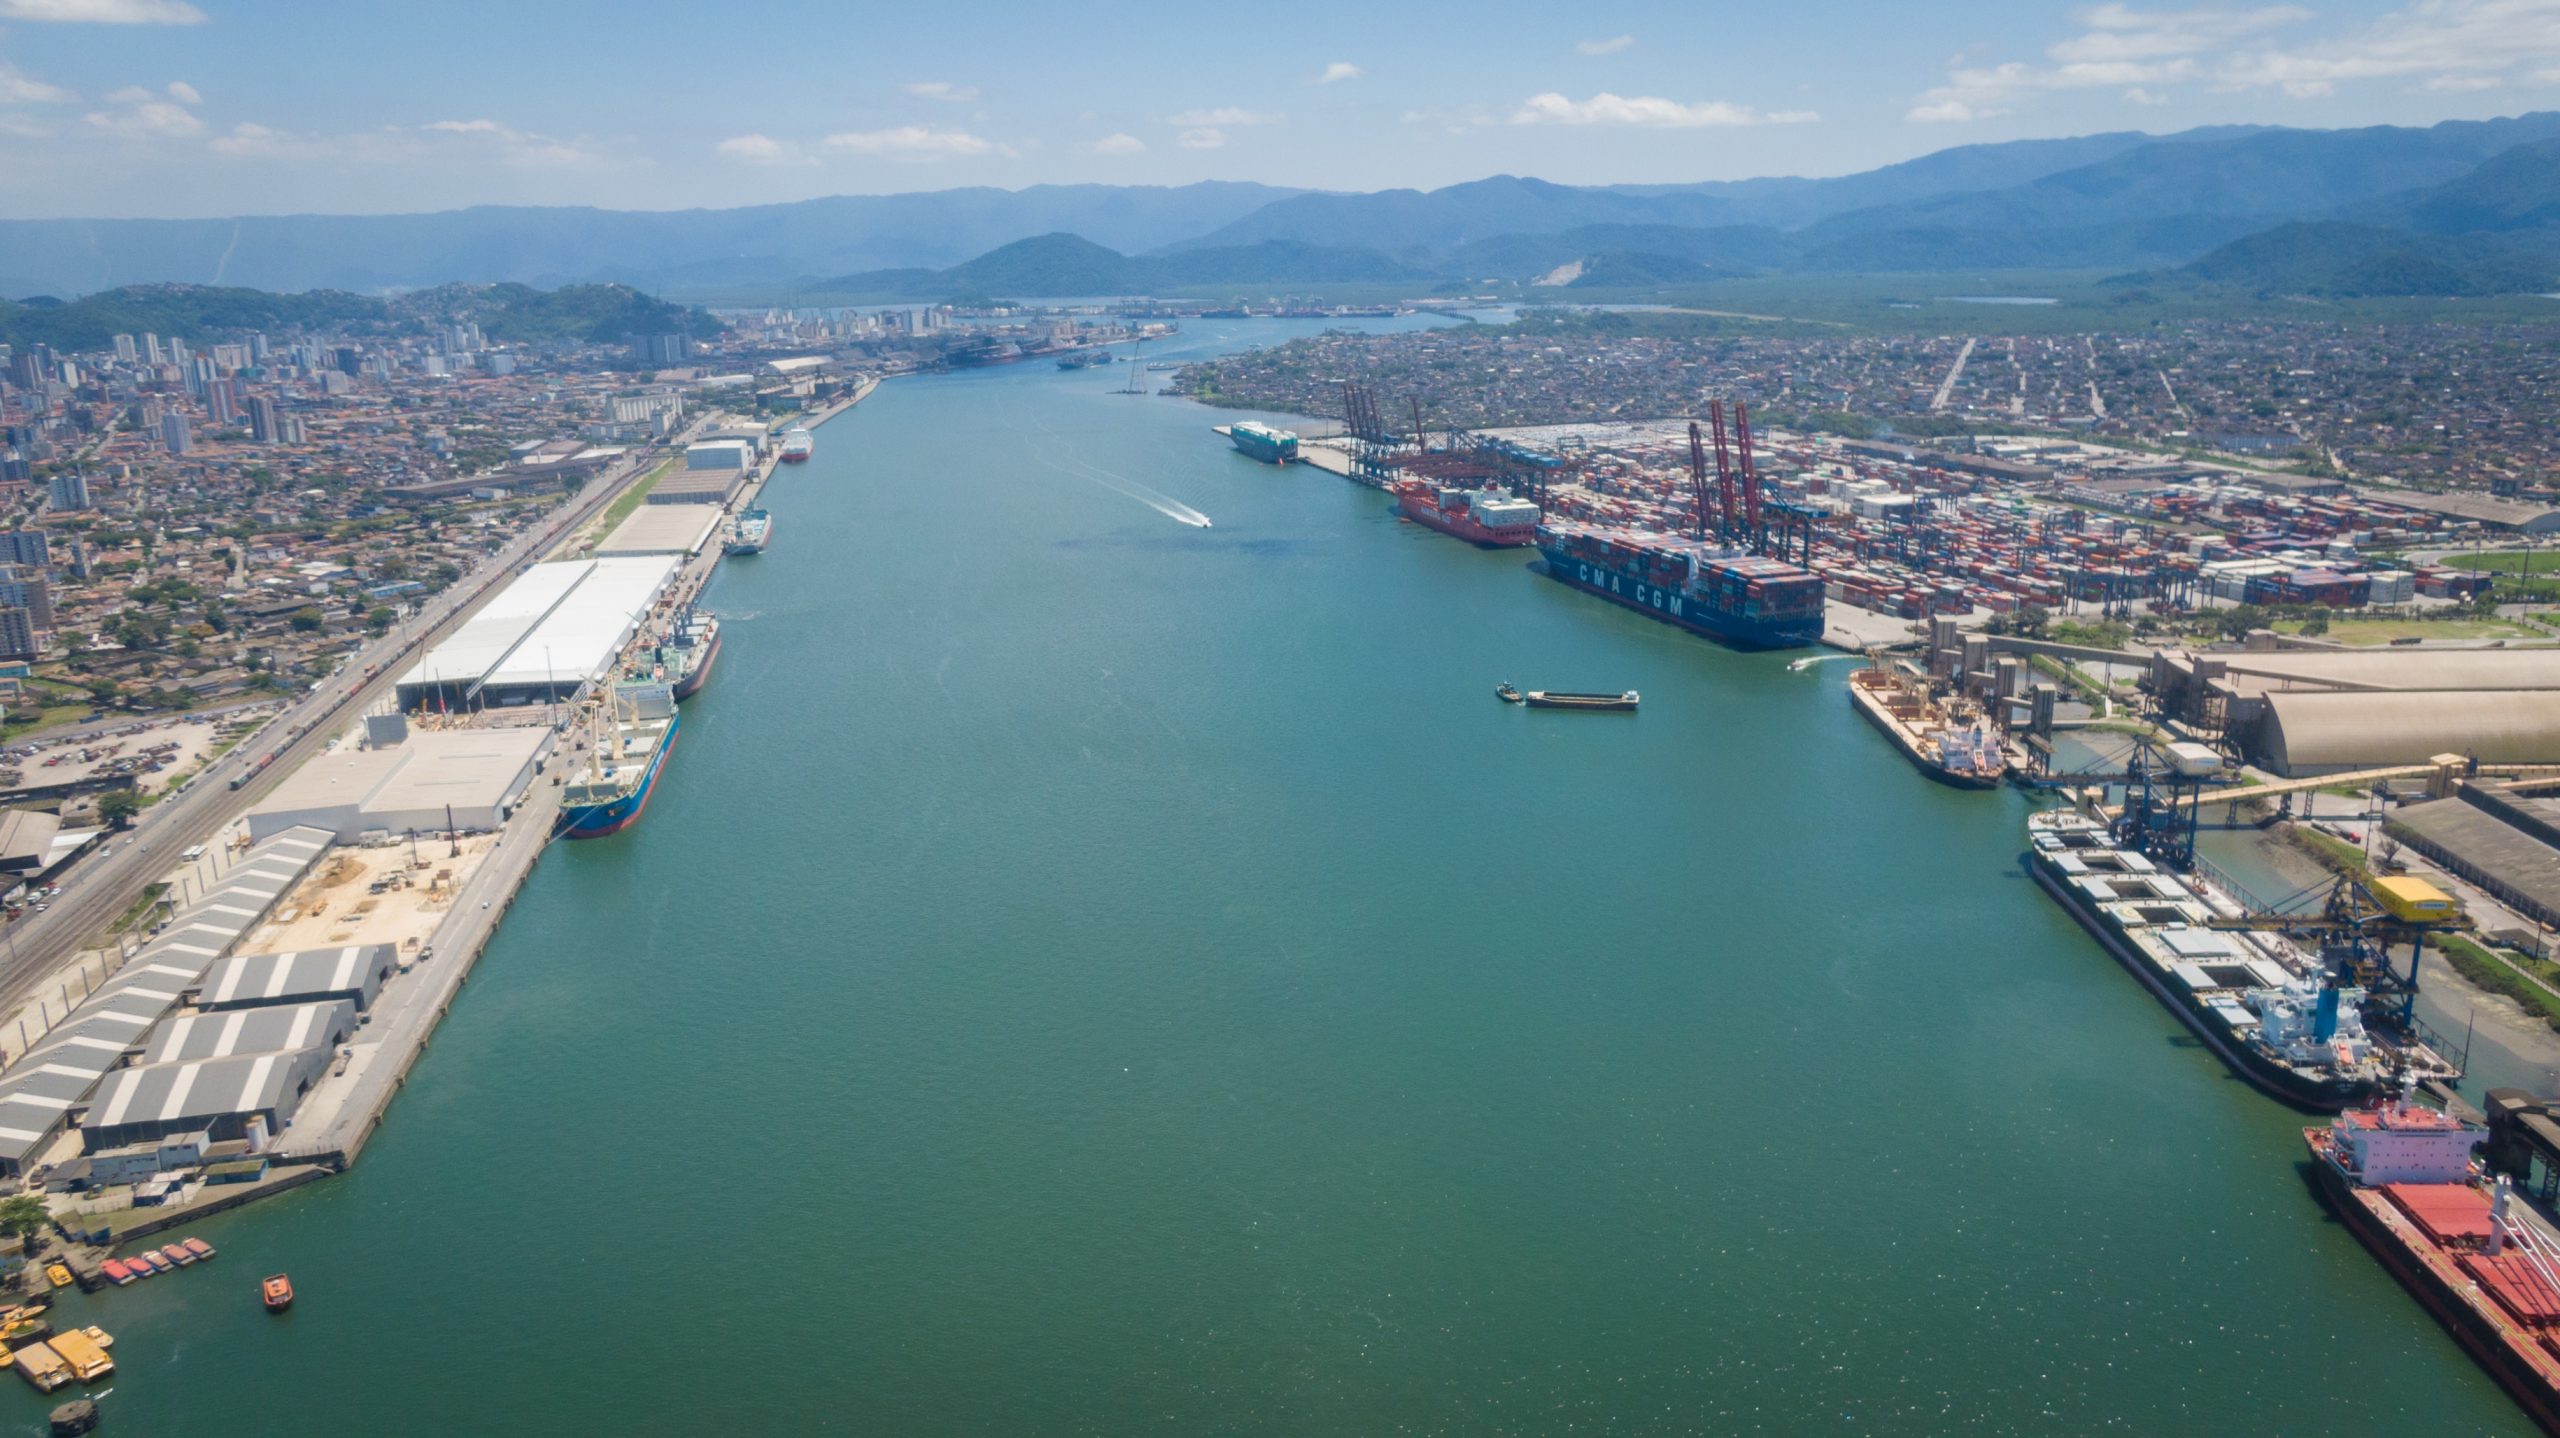 Santos Port Authority